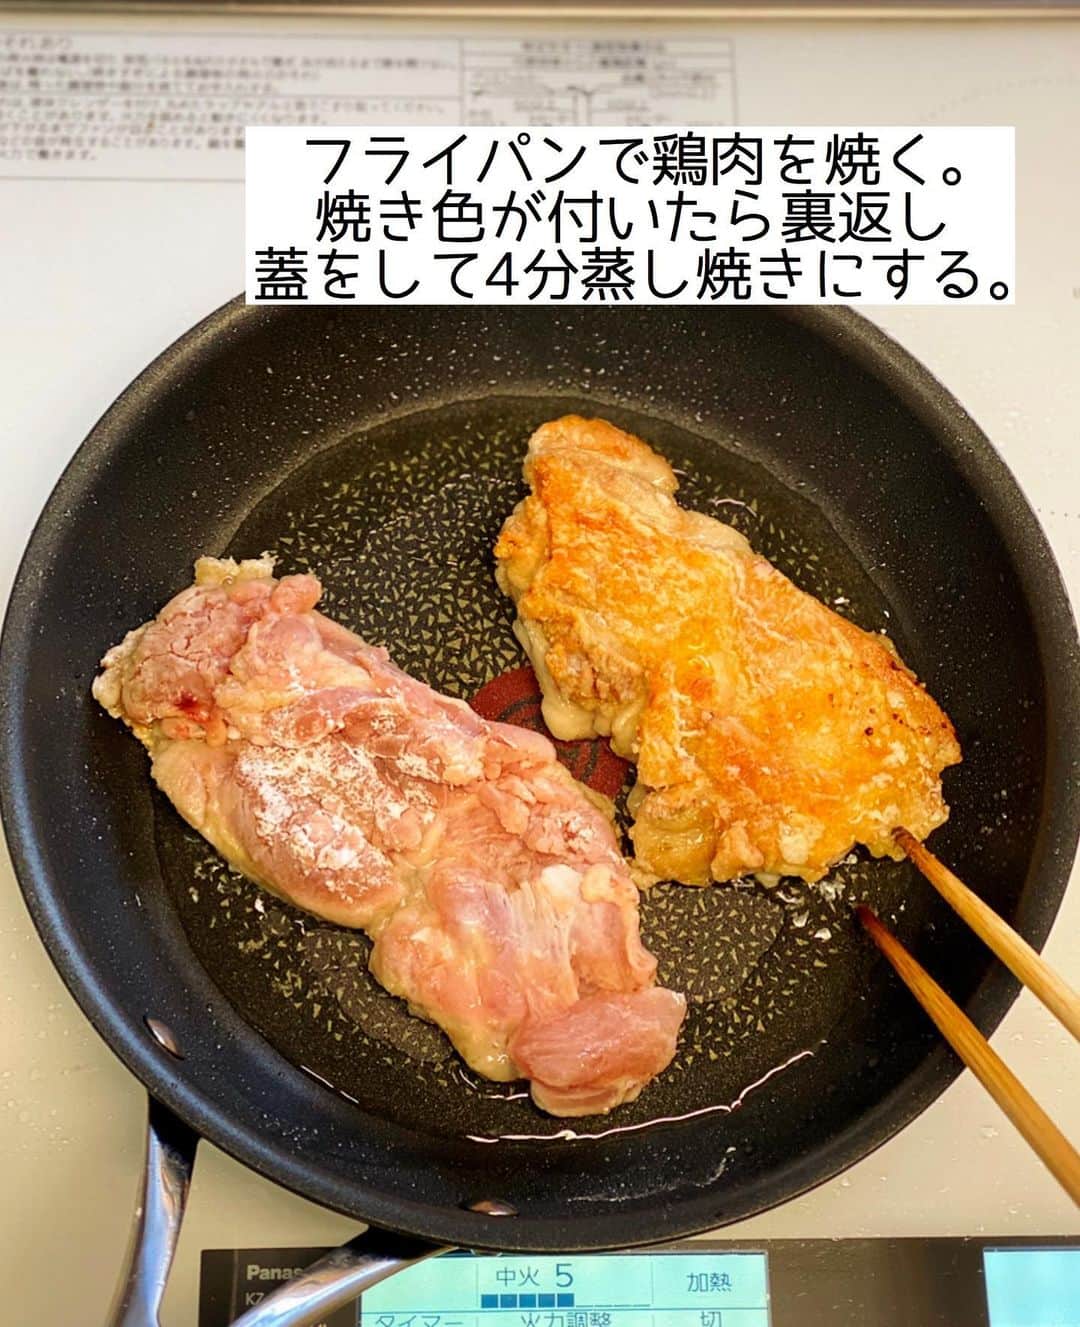 Mizuki【料理ブロガー・簡単レシピ】さんのインスタグラム写真 - (Mizuki【料理ブロガー・簡単レシピ】Instagram)「・﻿ 【#レシピ 】ーーーーーー﻿ ♡鶏肉の甘酢生姜だれ♡﻿ (2品献立提案あり)﻿ ーーーーーーーーーーーー﻿ ﻿ ﻿ ﻿ おはようございます(*^^*)﻿ ﻿ 今日ご紹介させていただくのは﻿ 鶏肉のテリテリおかず♡﻿ こんがり焼いた鶏肉に﻿ 生姜香る甘酢だれをからめました♩﻿ しっかり味で冷めてもおいしく﻿ お弁当にもおすすめですよ〜(*´艸`)﻿ お好みでマヨネーズをかけて﻿ チキン南蛮風にするのもおすすめです♡﻿ ﻿ フライパンひとつでできるので﻿ よかったらお試し下さいね(*^^*)﻿ ﻿ ﻿ ﻿ ＿＿＿＿＿＿＿＿＿＿＿＿＿＿＿＿＿＿＿＿﻿ 【2人分】﻿ 鶏もも肉...大1枚(300g)﻿ 塩こしょう...少々﻿ 片栗粉...適量﻿ サラダ油...大1﻿ ●砂糖・醤油・酢...各大1.5﻿ ●生姜チューブ...3cm﻿ キャベツの千切り...適量﻿ ﻿ 1.鶏肉は身の厚い部分を開いて縦半分に切り、塩こしょうを振って片栗粉をまぶす。●は合わせておく。﻿ 2.フライパンにサラダ油を中火で熱して鶏肉を焼く。焼き色が付いたら裏返してフタをし、弱めの中火で4分蒸し焼きにする。﻿ 3.火が通ったら余分な油を拭き取り、●を加えて煮からめる。器にキャベツの千切りを盛り、鶏肉を食べやすい大きさに切ってのせる。﻿ ￣￣￣￣￣￣￣￣￣￣￣￣￣￣￣￣￣￣￣￣﻿ ﻿ ﻿ ﻿ 《ポイント》﻿ ︎ ♦︎鶏肉は一口大に切ってから焼いてもOK♩﻿ ♦︎甘めの味付けです♩﻿ ﻿ ﻿ ﻿ ﻿ ﻿ ﻿ ＿＿＿＿＿＿＿＿＿＿＿＿＿＿＿＿＿＿＿﻿ 🥣🥣🥣🥣 2品献立提案 🥣🥣🥣🥣﻿ ￣￣￣￣￣￣￣￣￣￣￣￣￣￣￣￣￣￣￣﻿ 【合間に作れるおすすめ副菜】﻿ >じゃがいものカレーマヨ和え(P.99)﻿ >しめじと厚揚げの煮物(P.33)﻿ (#Mizukiの2品献立 より)﻿ ﻿ 【献立の段取り】﻿ 副菜をレンジに入れてからメインを焼く🥢﻿ ￣￣￣￣￣￣￣￣￣￣￣￣￣￣￣￣￣￣￣﻿ ﻿ ﻿ ﻿ ﻿ ﻿ ﻿ ⭐️発売中⭐️3刷重版が決まりました😭﻿ 本当にありがとうございます(涙)﻿ _____________________________________﻿ \15分でいただきます/﻿ 📕#Mizukiの2品献立 📕﻿ (9月24日発売・マガジンハウス)﻿ ￣￣￣￣￣￣￣￣￣￣￣￣￣￣￣￣￣﻿ ﻿ 忙しい私たちには﻿ 2品くらいがちょうどいい！﻿ 『しんどくない献立、考えました』﻿ ￣￣￣￣￣￣￣￣￣￣￣￣￣￣￣￣﻿ ﻿ ーーーーーPART.1 ーーーーー﻿ 【Mizukiのお墨つき！２品献立ベスト10】﻿ 約15分でできる10献立をご紹介！﻿ メインは全部フライパン、副菜はレンチンor混ぜるだけ♡﻿ ﻿ ーーーーーPART.2 ーーーーー﻿ 【フライパンひとつ！今夜のメインおかず】﻿ 献立の主役になる肉や魚のおかず50品！﻿ Part3の副菜と組み合わせれば﻿ 献立のバリエーションが広がりますよ♩﻿ ﻿ ーーーーー PART.3 ーーーーー﻿ 【合間に作れる！ 野菜別かんたん副菜】﻿ レンチンor和えるだけの副菜レシピを﻿ 素材別にたっぷり収録♩﻿ ﻿ ーーーーー番外編ーーーーー﻿ 【ひとつで満足！ご飯＆麺】﻿ 【具だくさん！おかずスープ】﻿ 【オーブンいらずのおやつレシピ】﻿ ￣￣￣￣￣￣￣￣￣￣￣￣￣￣￣￣￣￣﻿ (ハイライトにリンク🔗あります💗)﻿ ﻿ ﻿ ﻿ ﻿ ﻿ ＿＿＿＿＿＿＿＿＿＿＿＿＿＿＿＿＿＿﻿ レシピを作って下さった際や﻿ レシピ本についてのご投稿には﻿ タグ付け( @mizuki_31cafe )して﻿ お知らせいただけると嬉しいです😊💕﻿ ￣￣￣￣￣￣￣￣￣￣￣￣￣￣￣￣￣￣﻿ ﻿ ﻿ ﻿ ﻿ ﻿ #鶏肉#甘酢#生姜#お弁当#Mizuki#簡単レシピ#時短レシピ#節約レシピ#料理#フーディーテーブル#マカロニメイト#おうちごはん#デリスタグラマー#料理好きな人と繋がりたい#食べ物#料理記録#おうちごはんlover#写真好きな人と繋がりたい#foodpic#cooking#recipe#lin_stagrammer#foodporn#yummy#f52grams#鶏肉の甘酢生姜だれm」10月25日 7時37分 - mizuki_31cafe